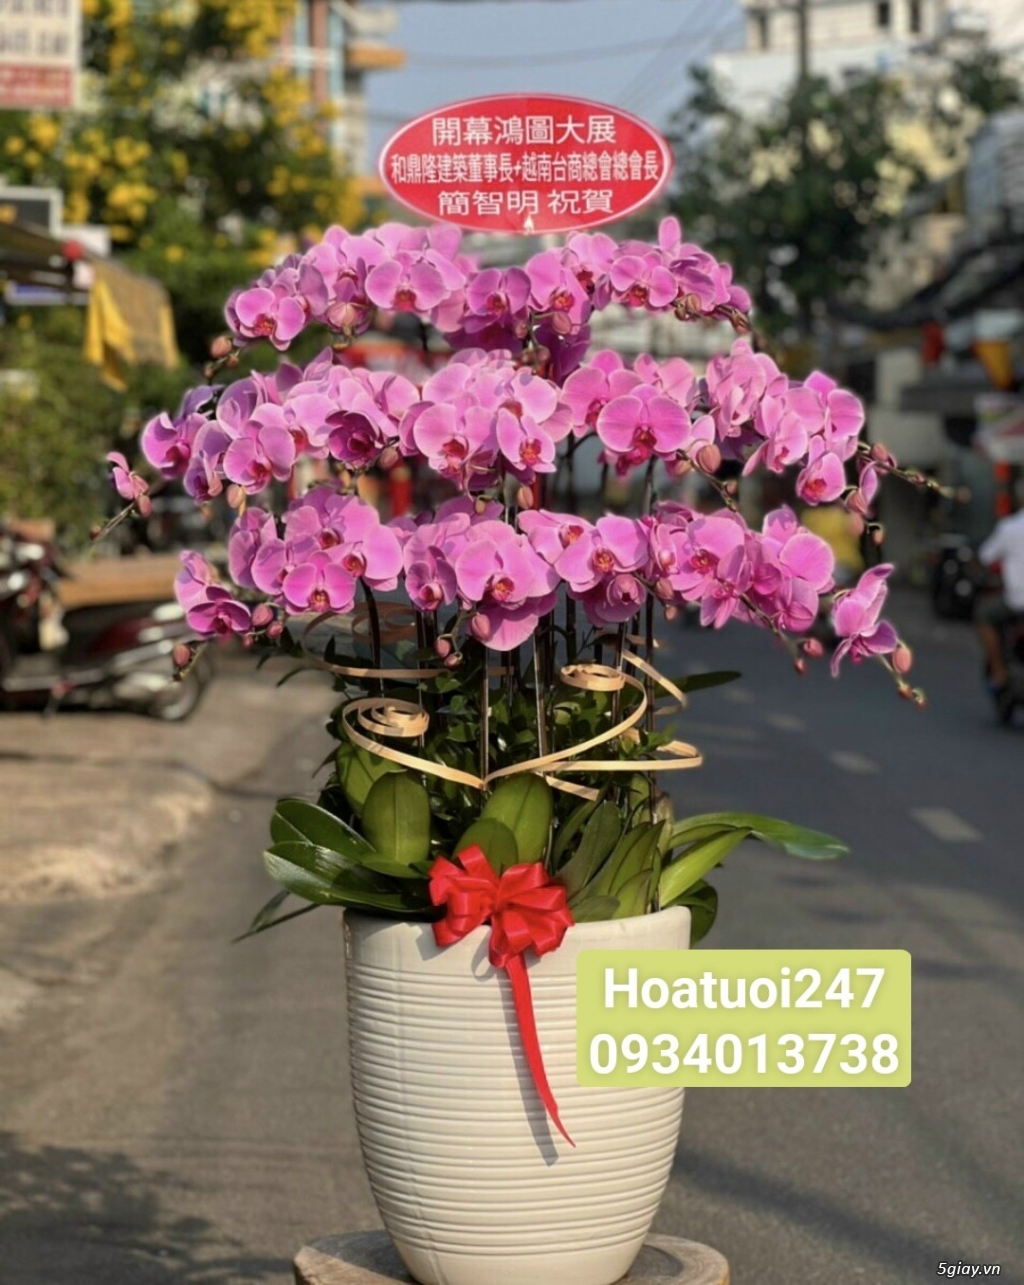 Shop hoa tươi lan hồ điệp quận Tân Bình tphcm 0934013738